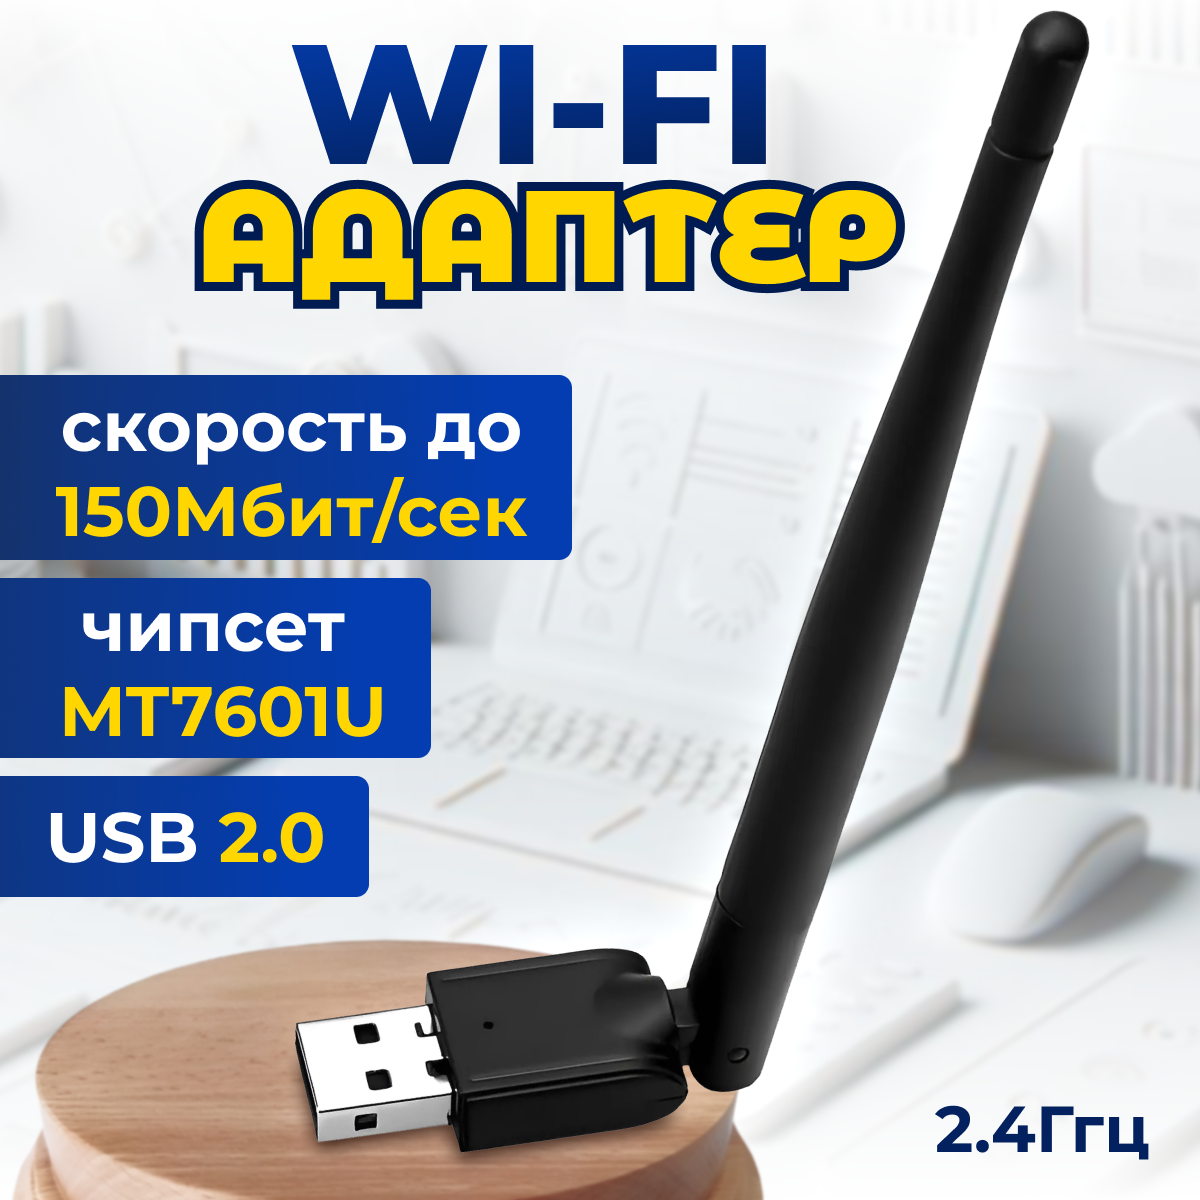 Адаптер Wi-Fi Rezer W3 802.11n USB2.0, до 150Mbit, чипсет MT7601U